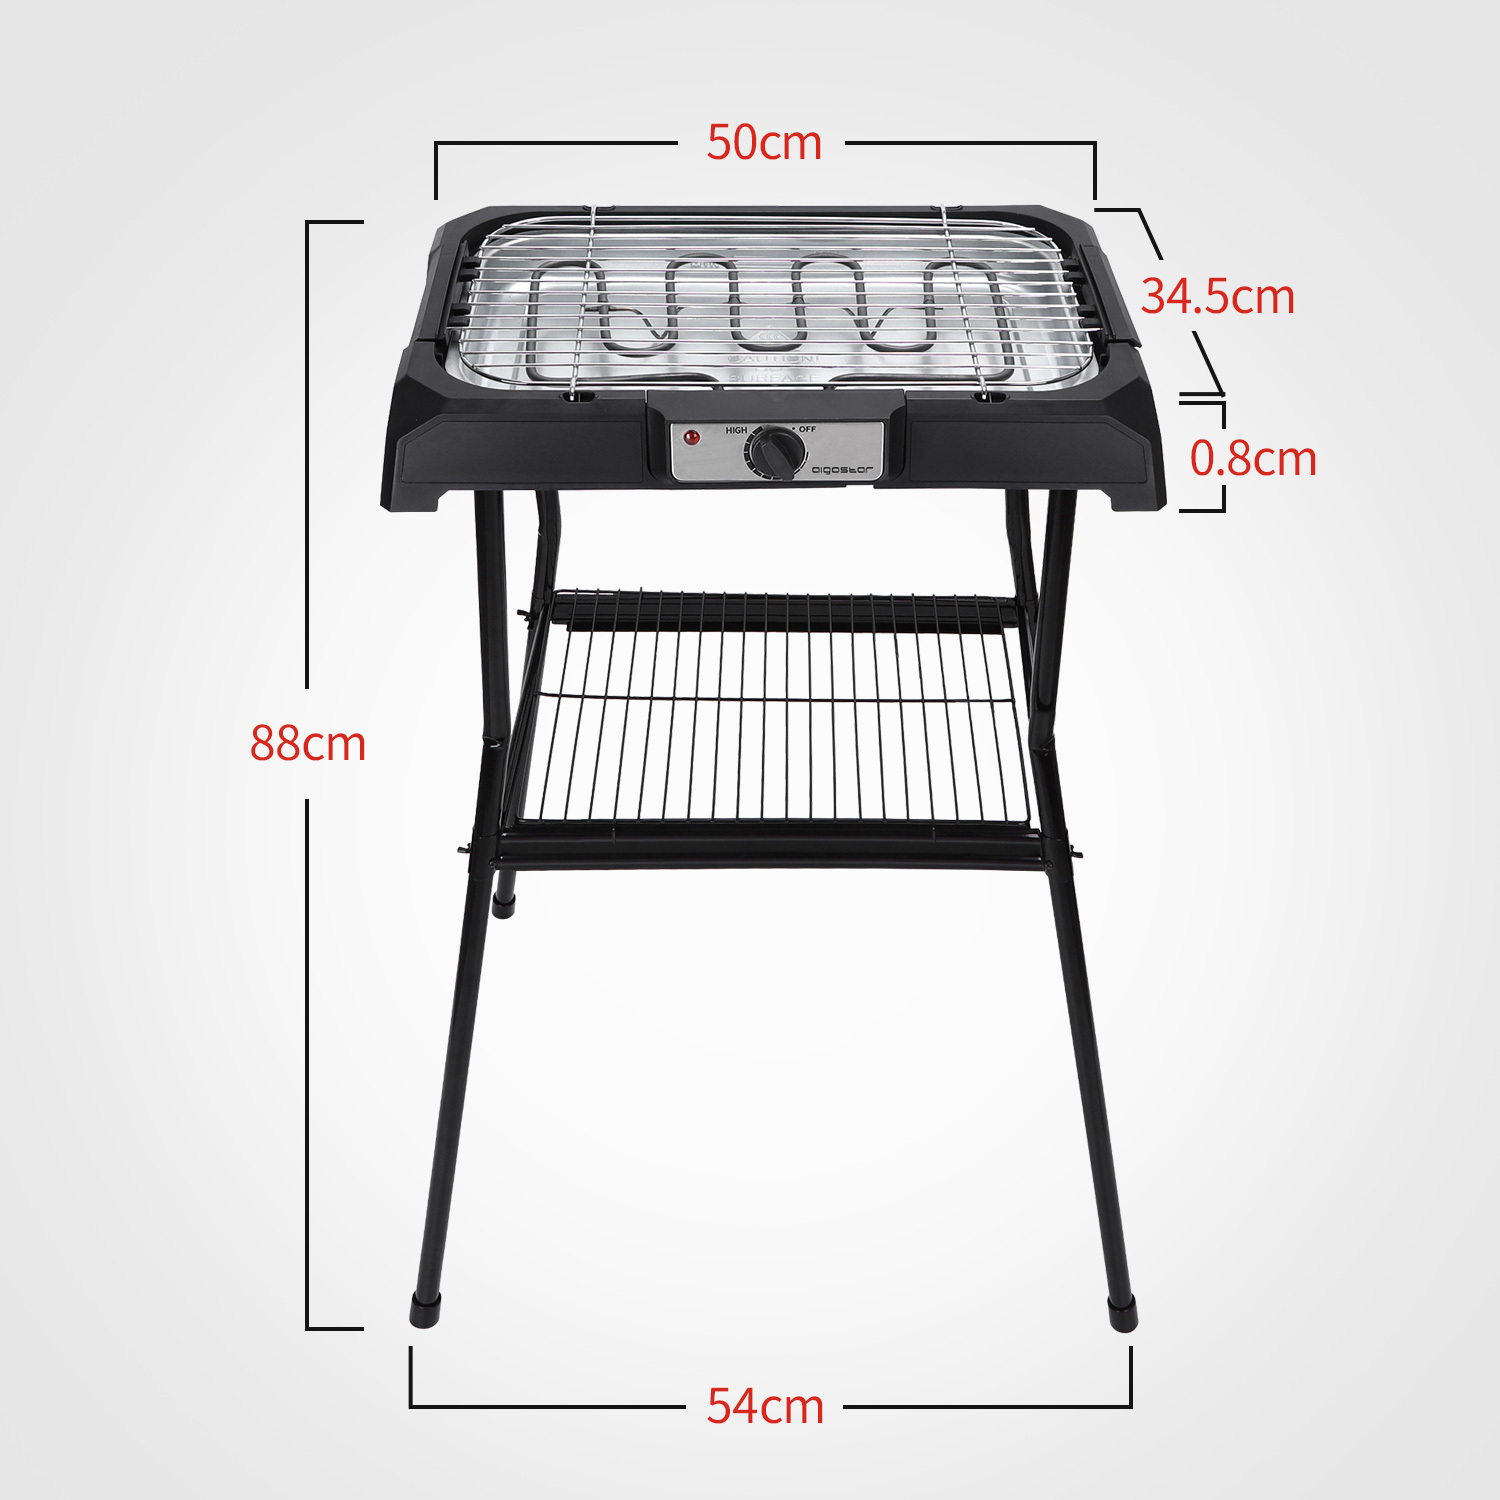 Tischgrill Standgrill 2000W , Barbecue-Standgrill , Grillfläche: 50cm x 34.5cm , schwarz